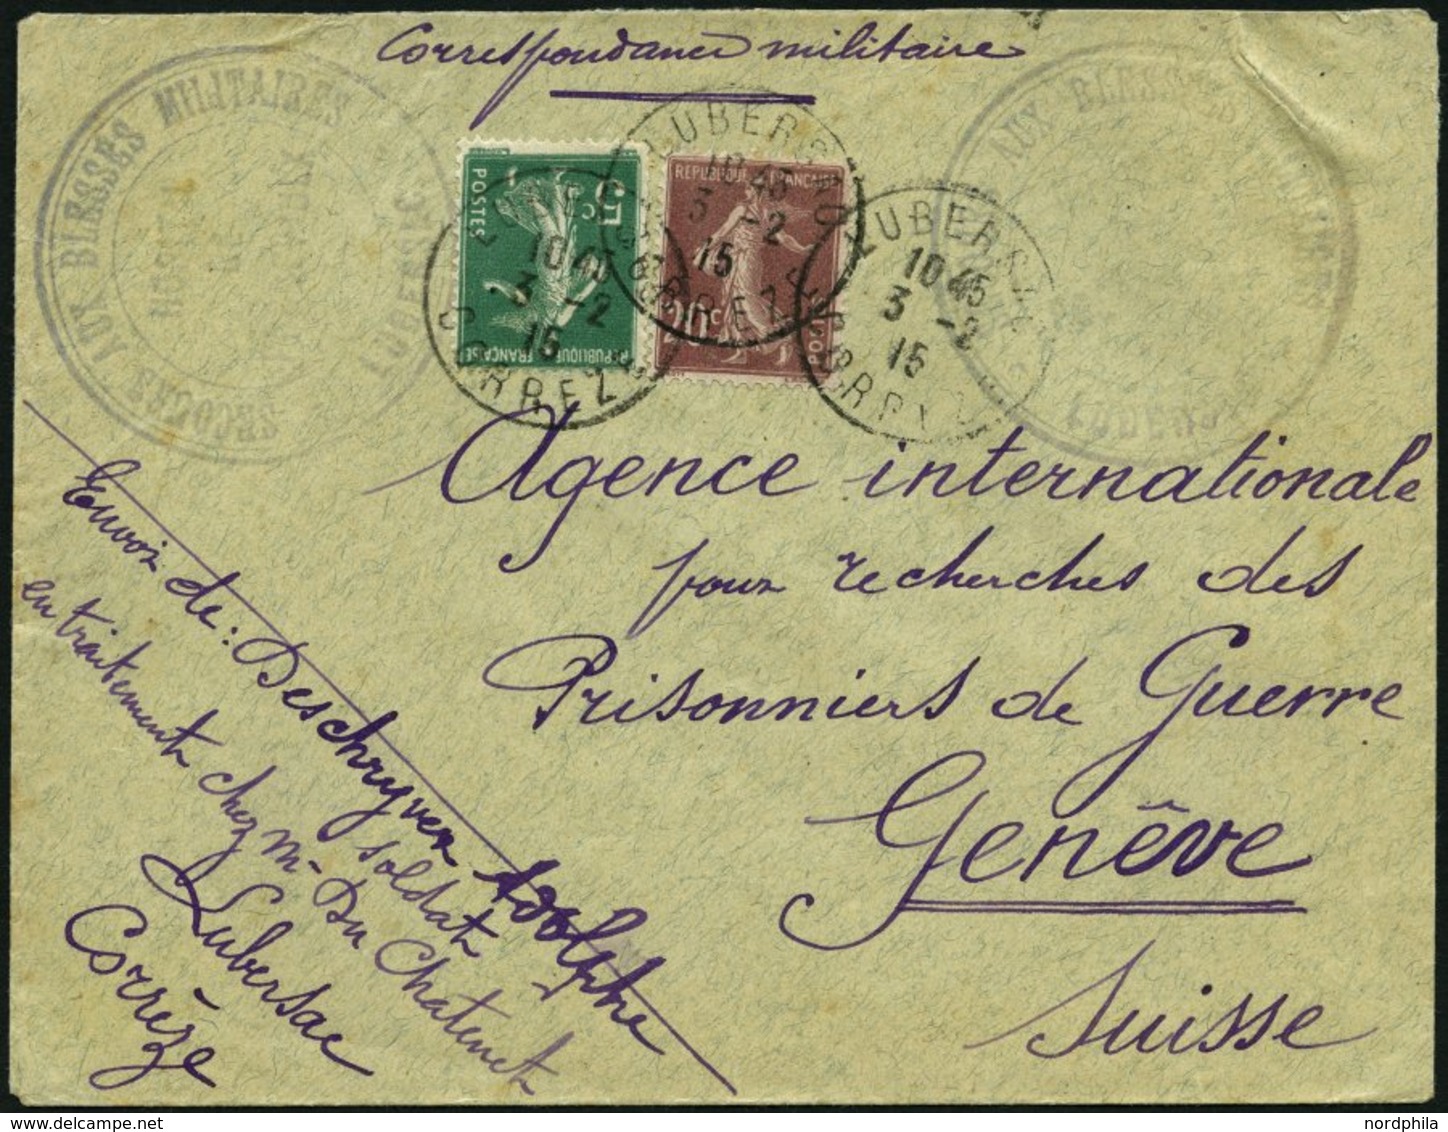 FRANKREICH FELDPOST 116,118 BRIEF, 1915, Brief Von Crois Rouge Française, Von Der Argentur Blessés, An Das International - War Stamps